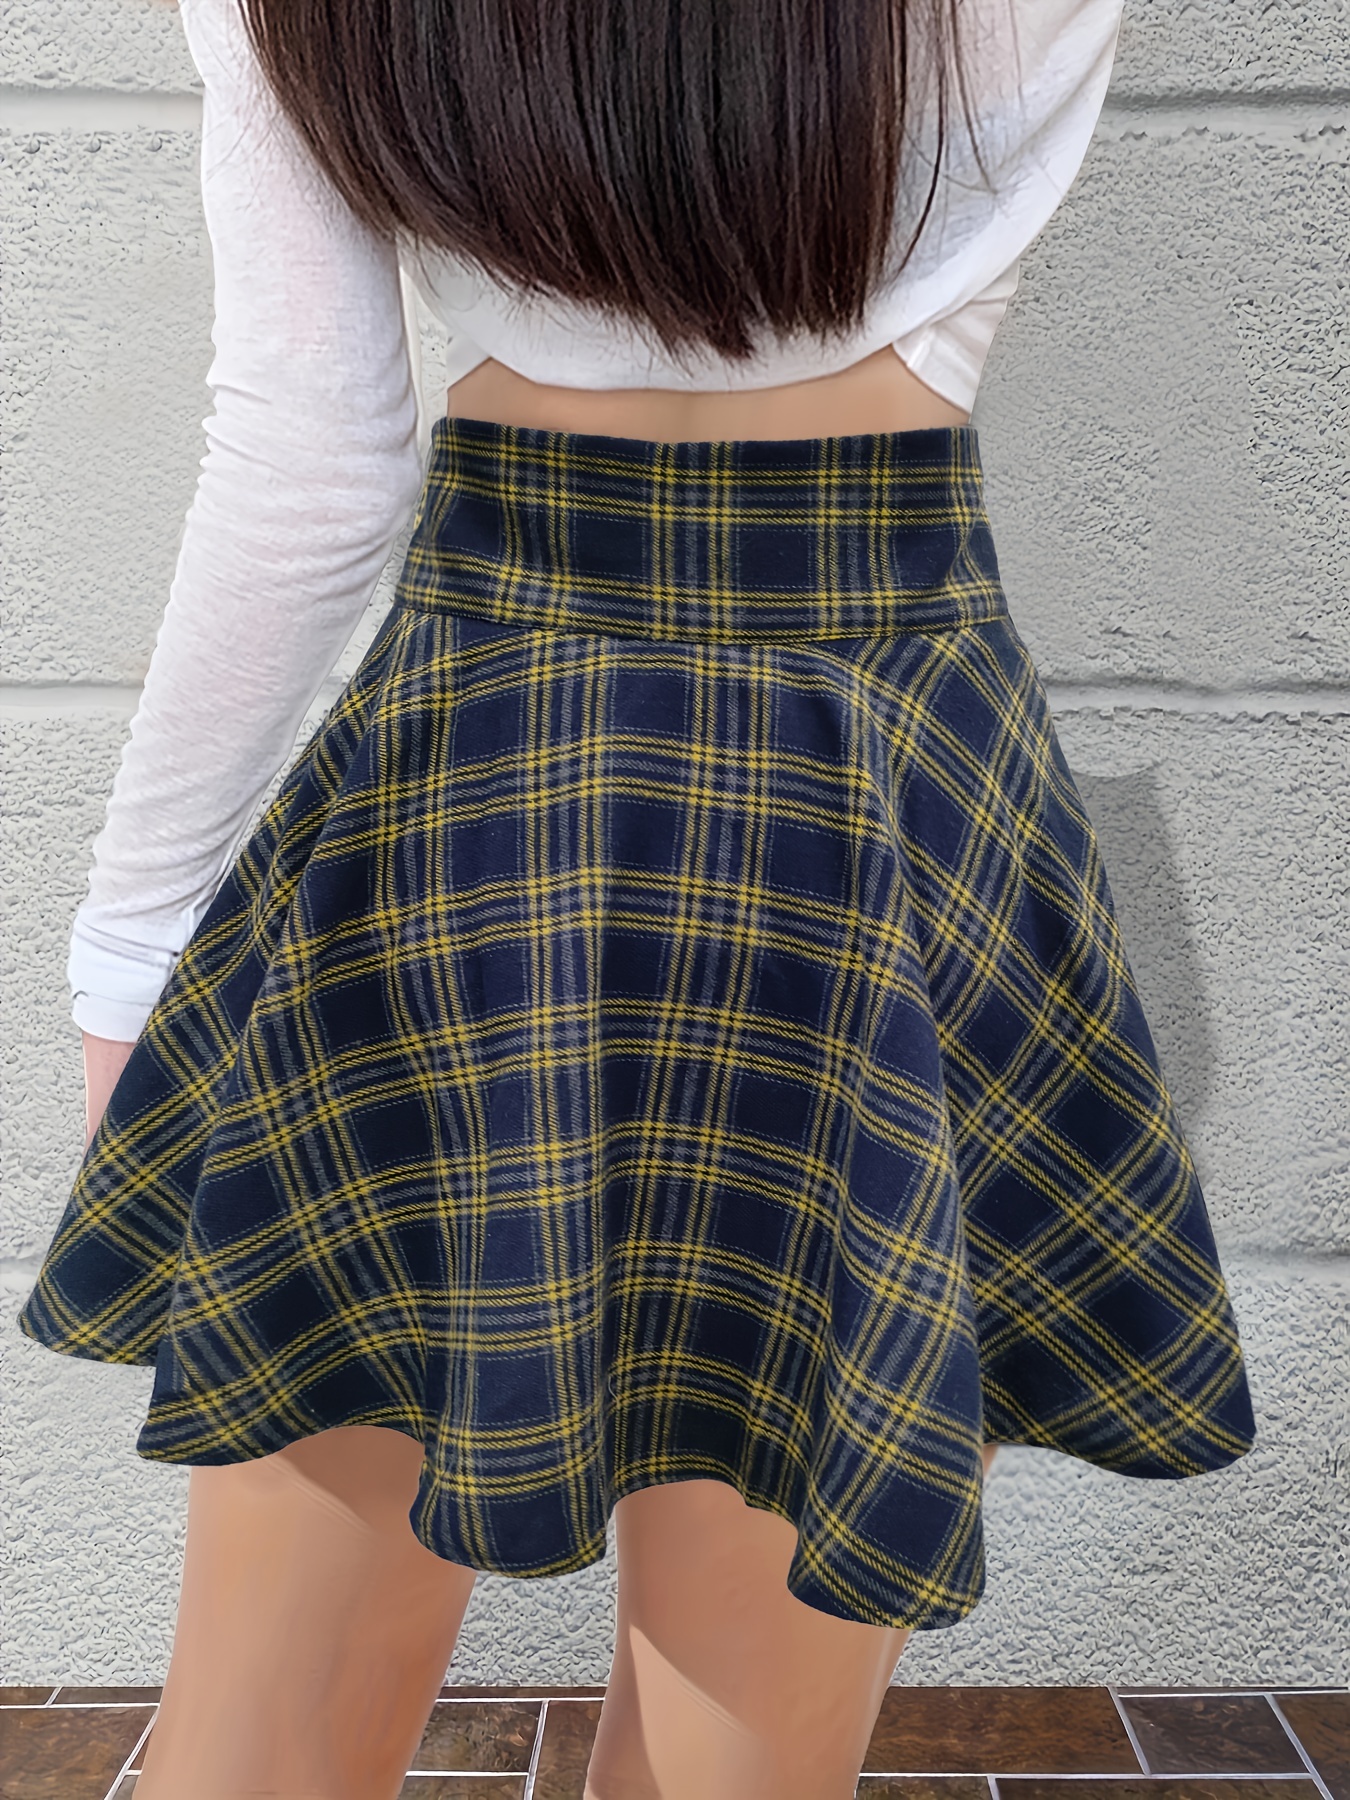 Short Skirt - Yellow/plaid - Ladies